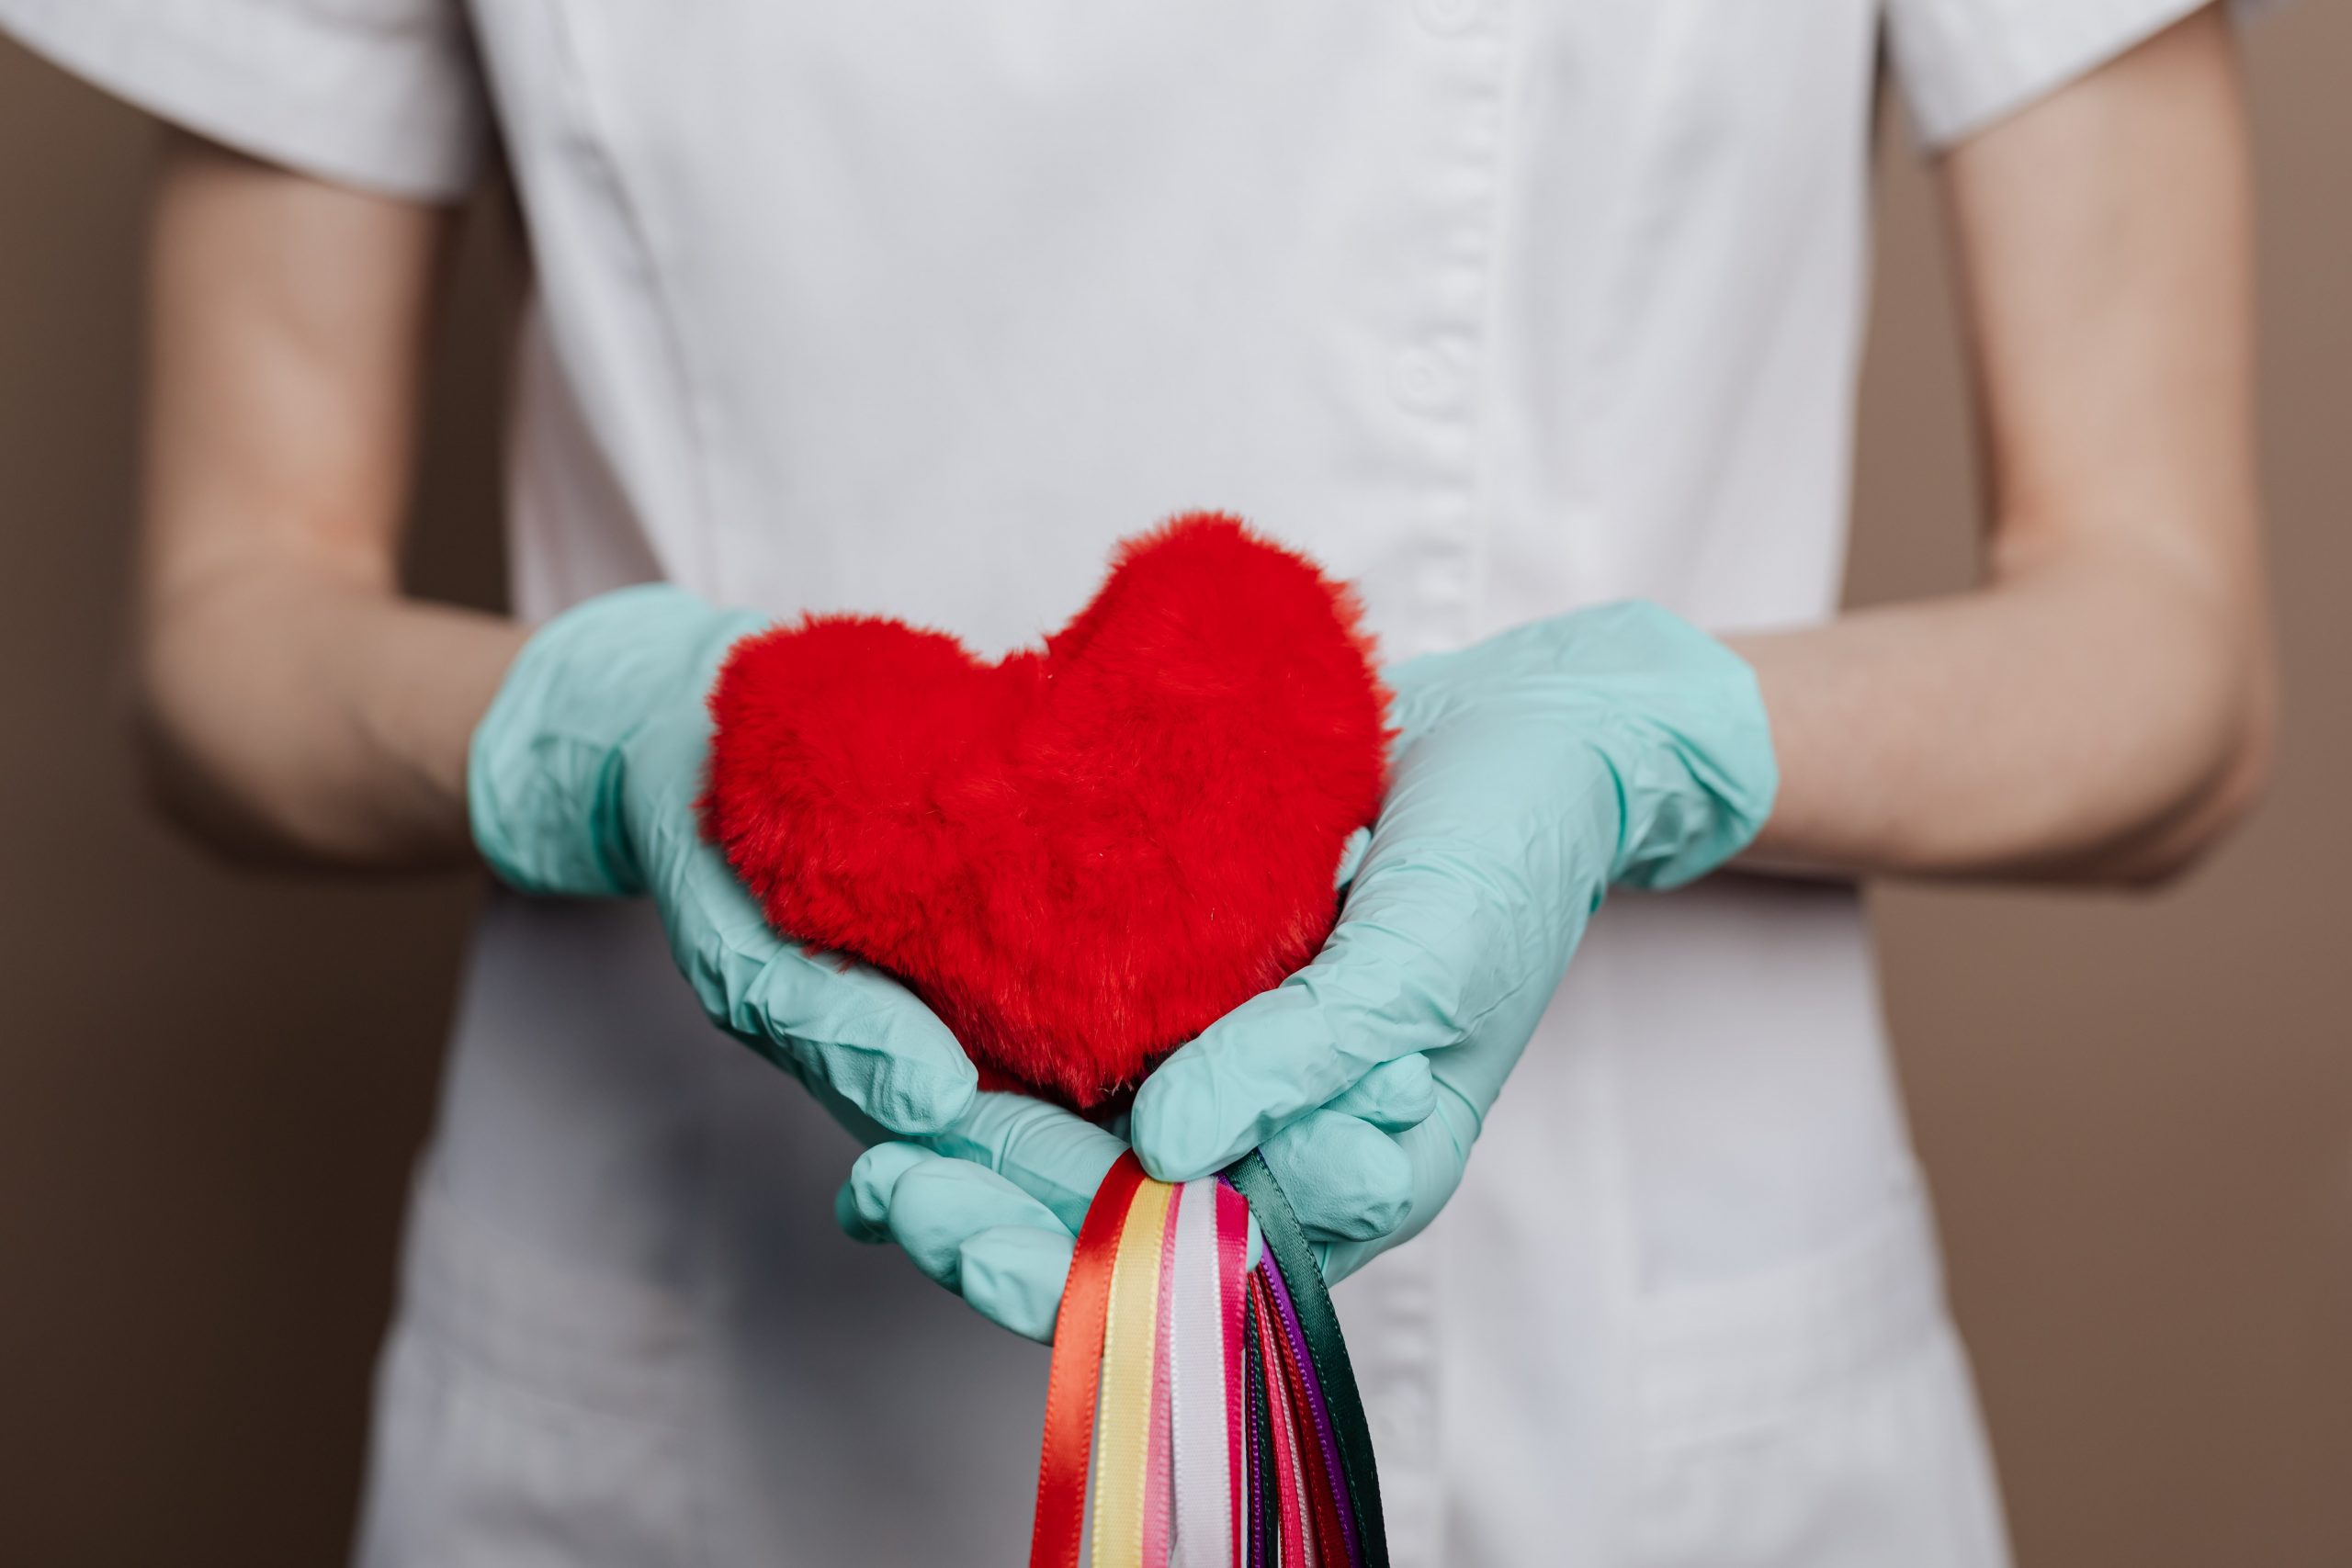 Кардиологи рассказали, что делают каждый день, чтобы не было проблем с сердцем